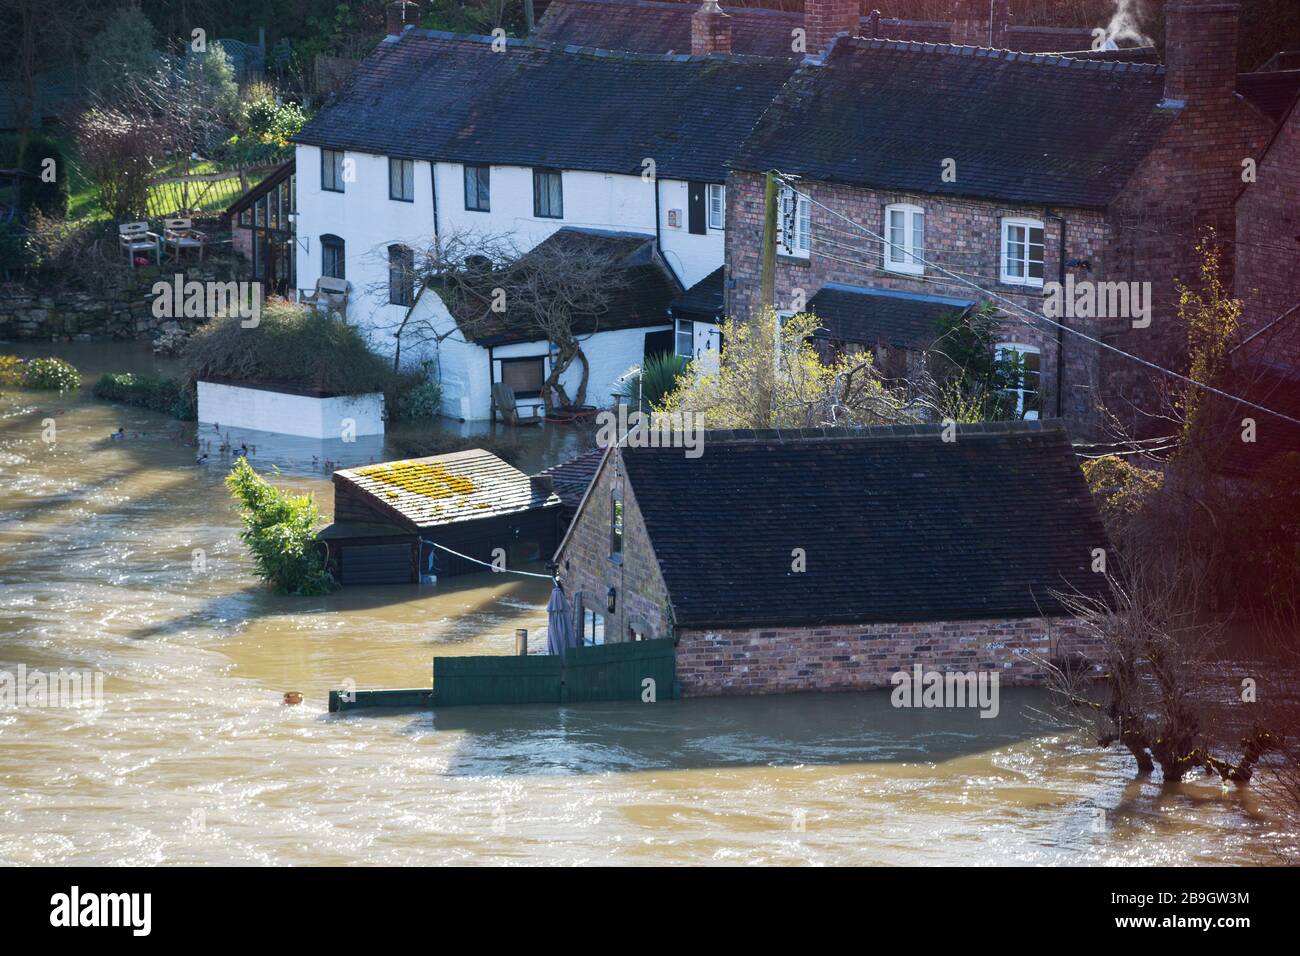 Überschwemmte Häuser in Ironbridge in Shropshire, wo der Fluss Severn nach dem nassesten Februar in Großbritannien, Febr, unter starken Hochwasserbedingungen stand Stockfoto